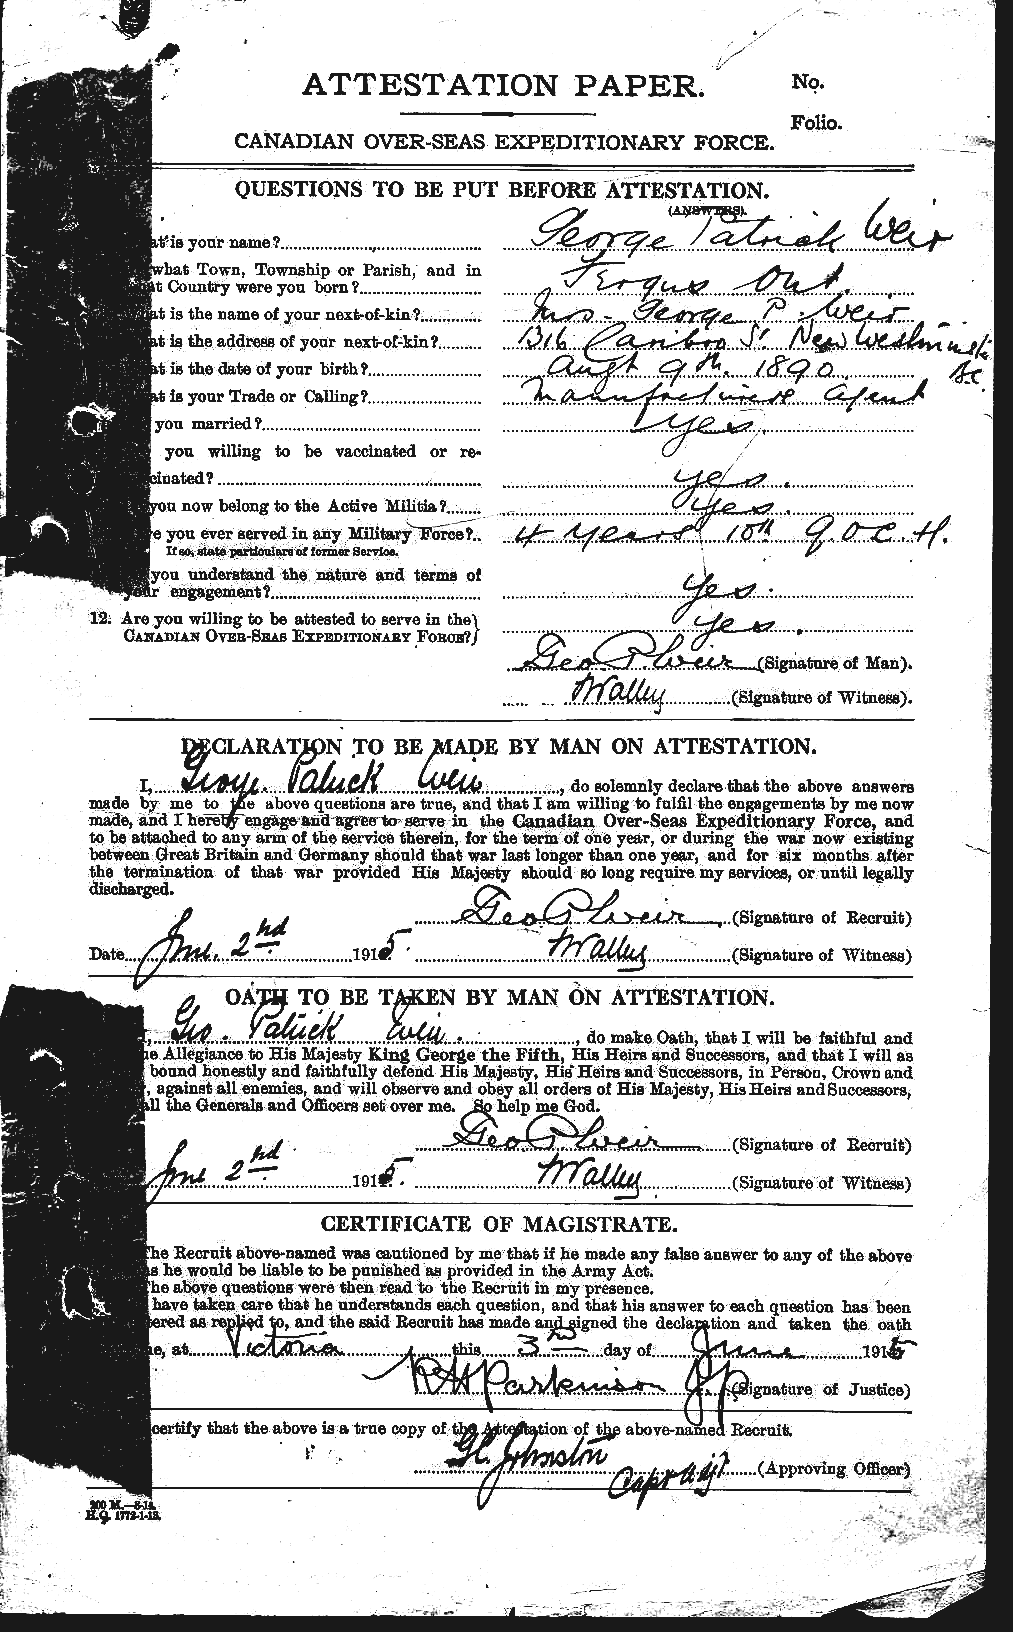 Dossiers du Personnel de la Première Guerre mondiale - CEC 663818a